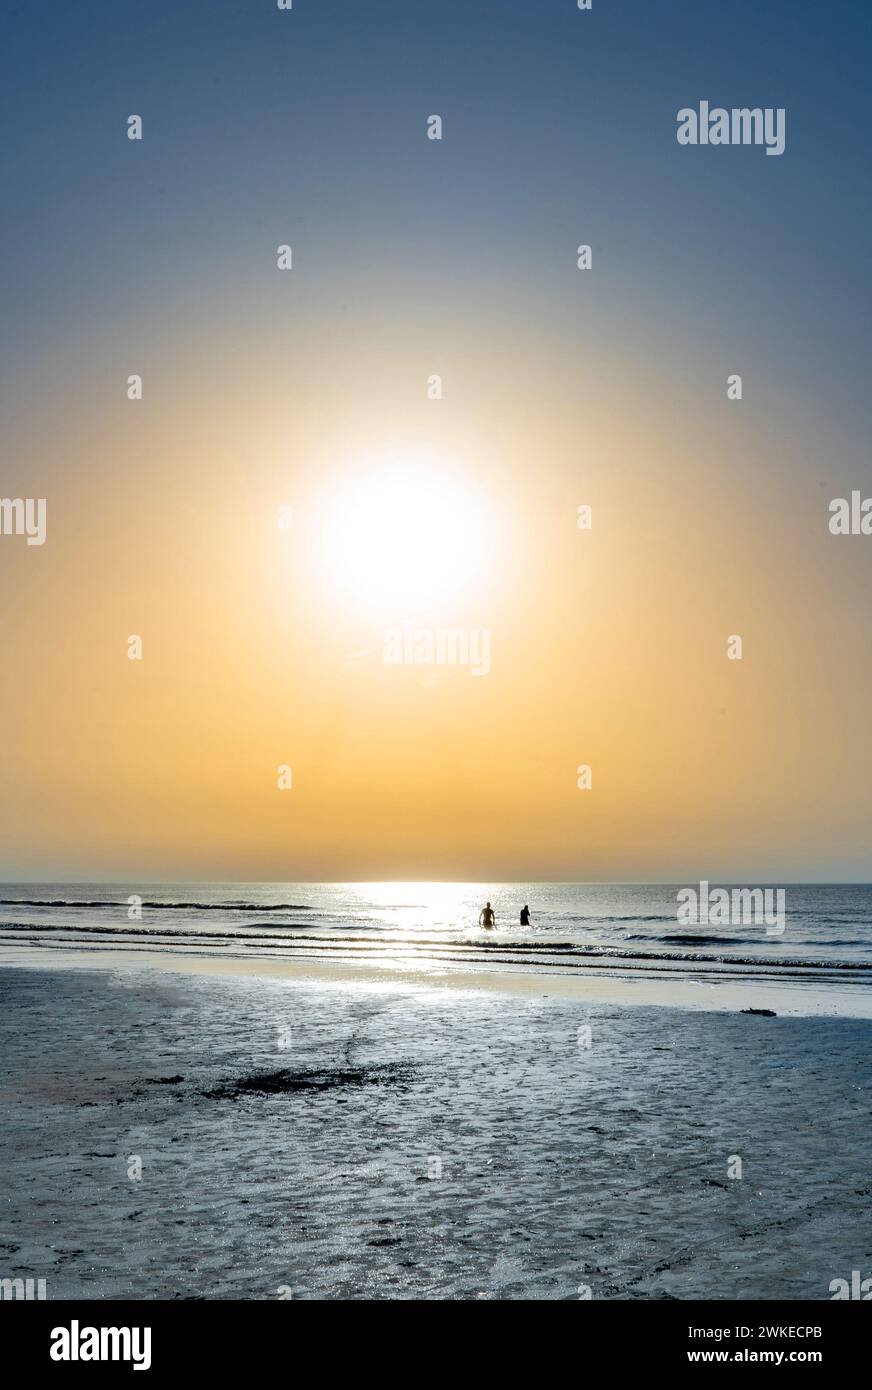 Niedrige Sonne auf dem Meer von de panne mit der Silhouette von zwei Personen und dem Meer Stockfoto